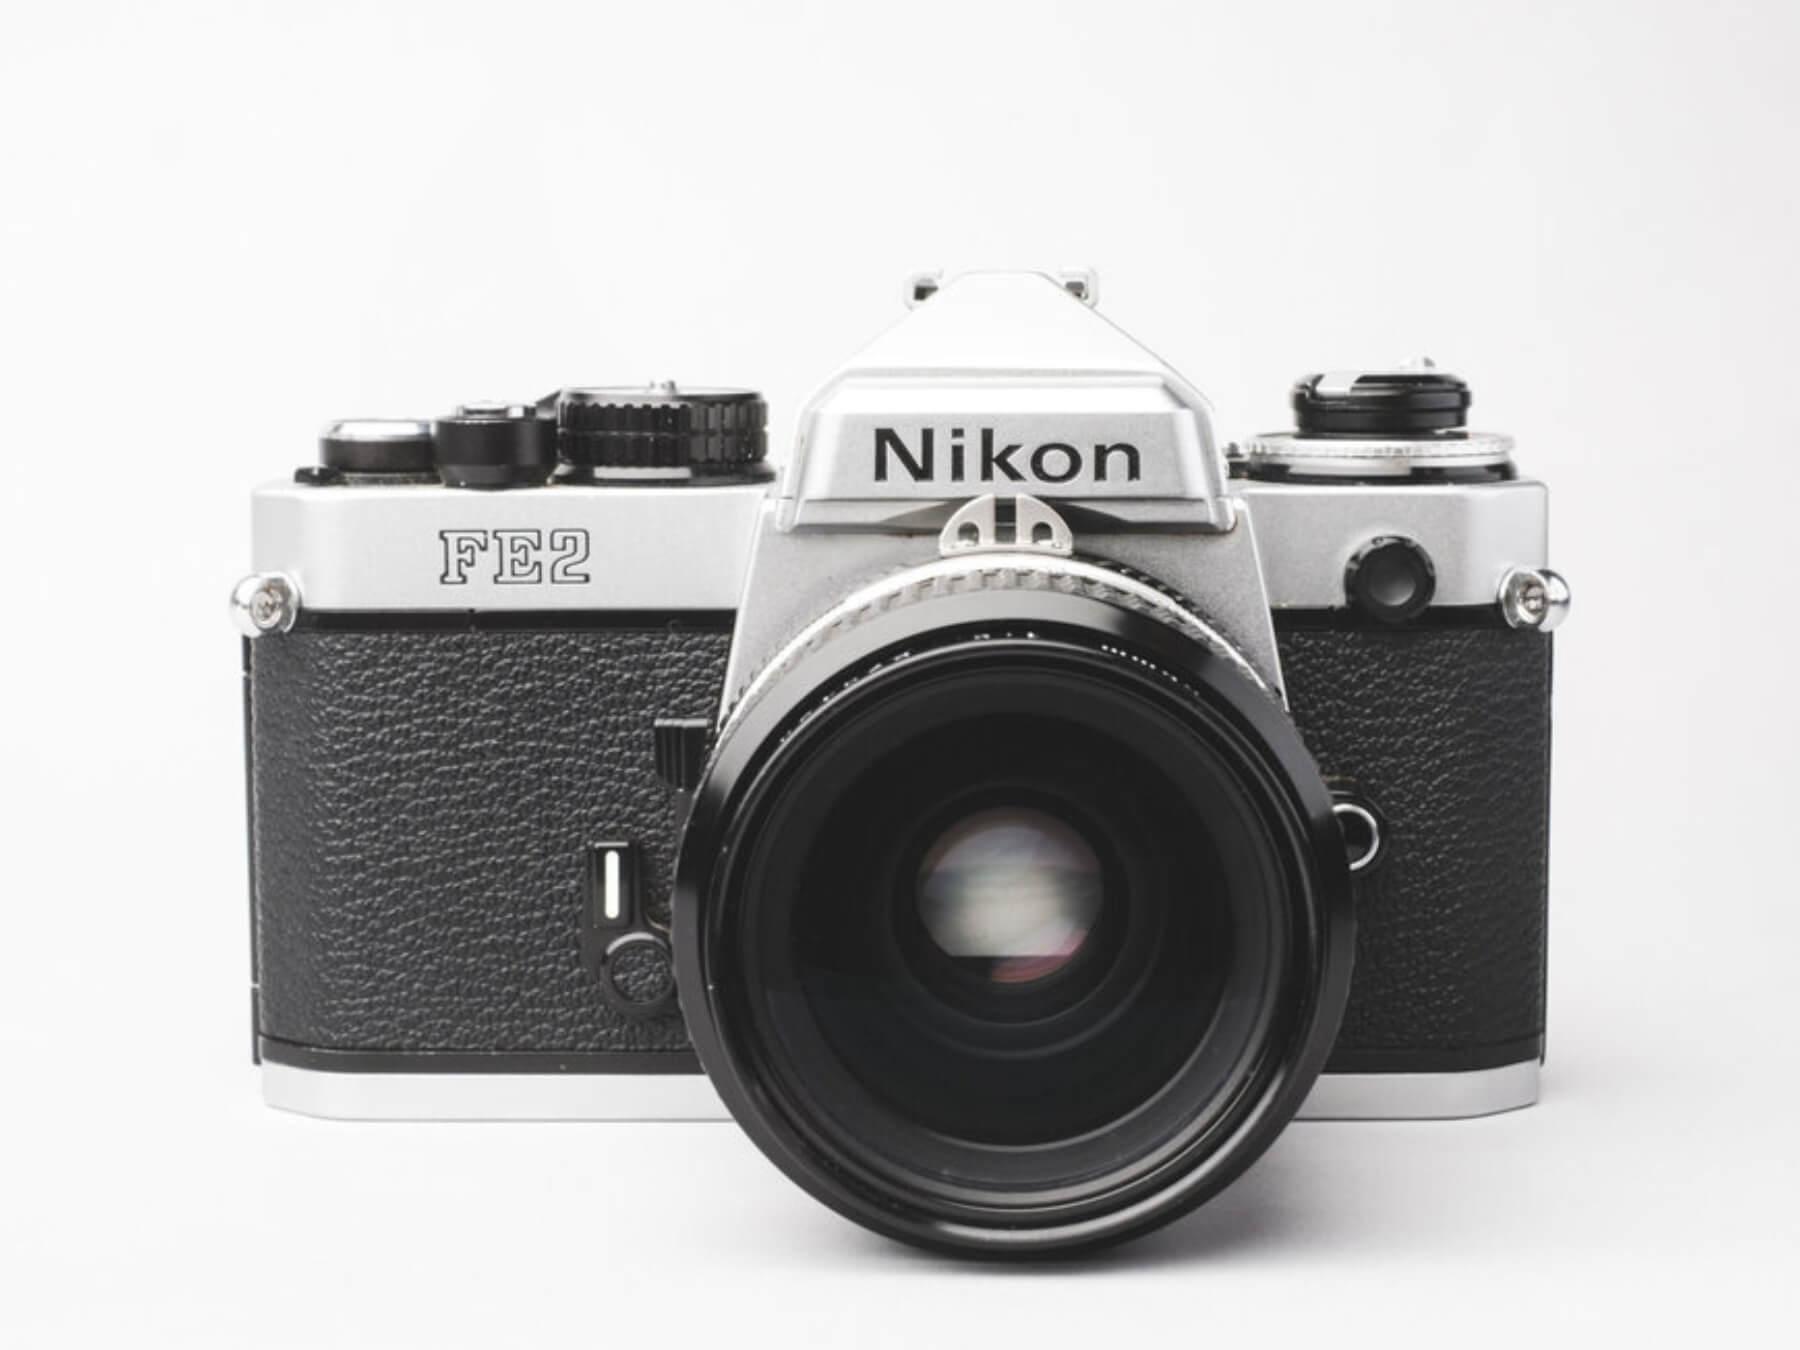 Nikon fe2 camera with lens